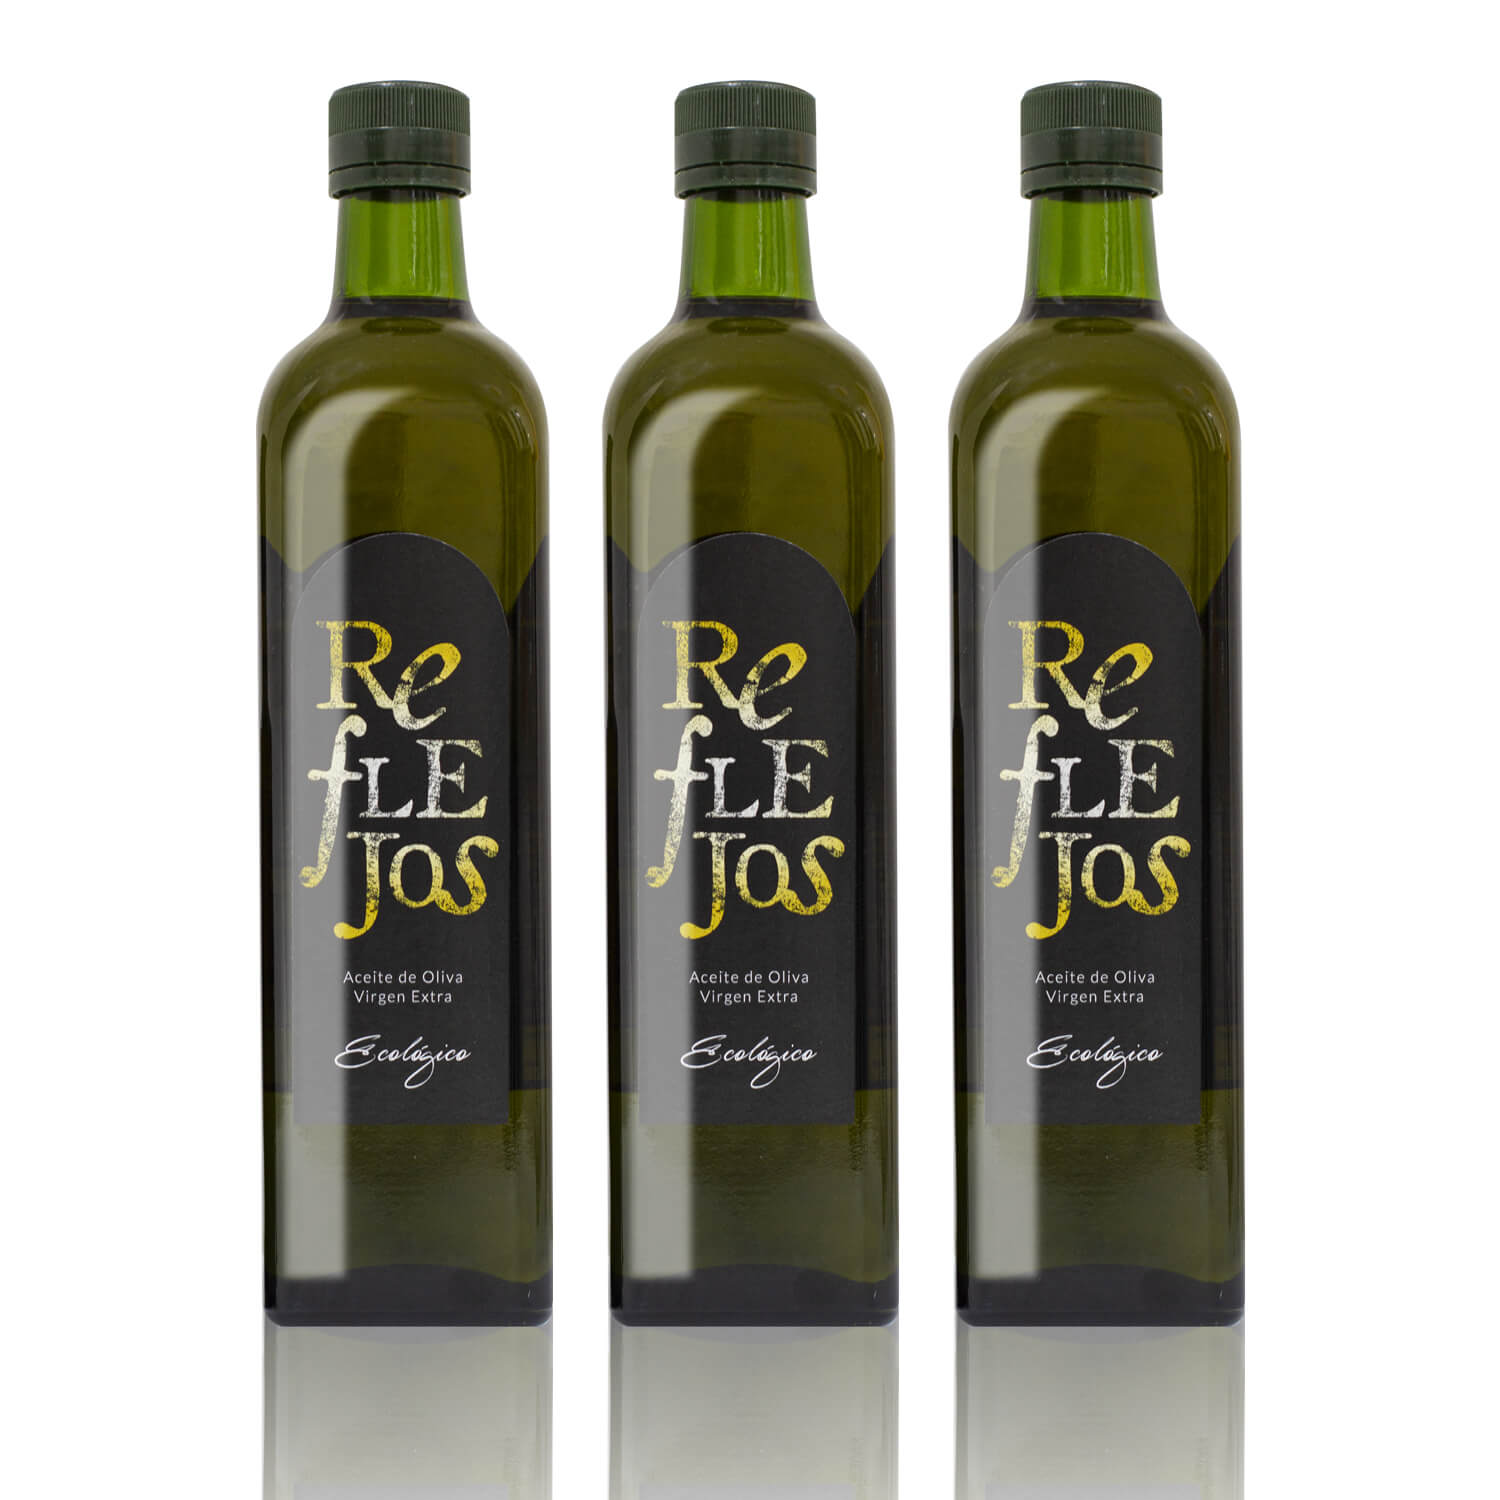 Aceite de oliva virgen extra. Estuche de 3 botellas de 750 ml.